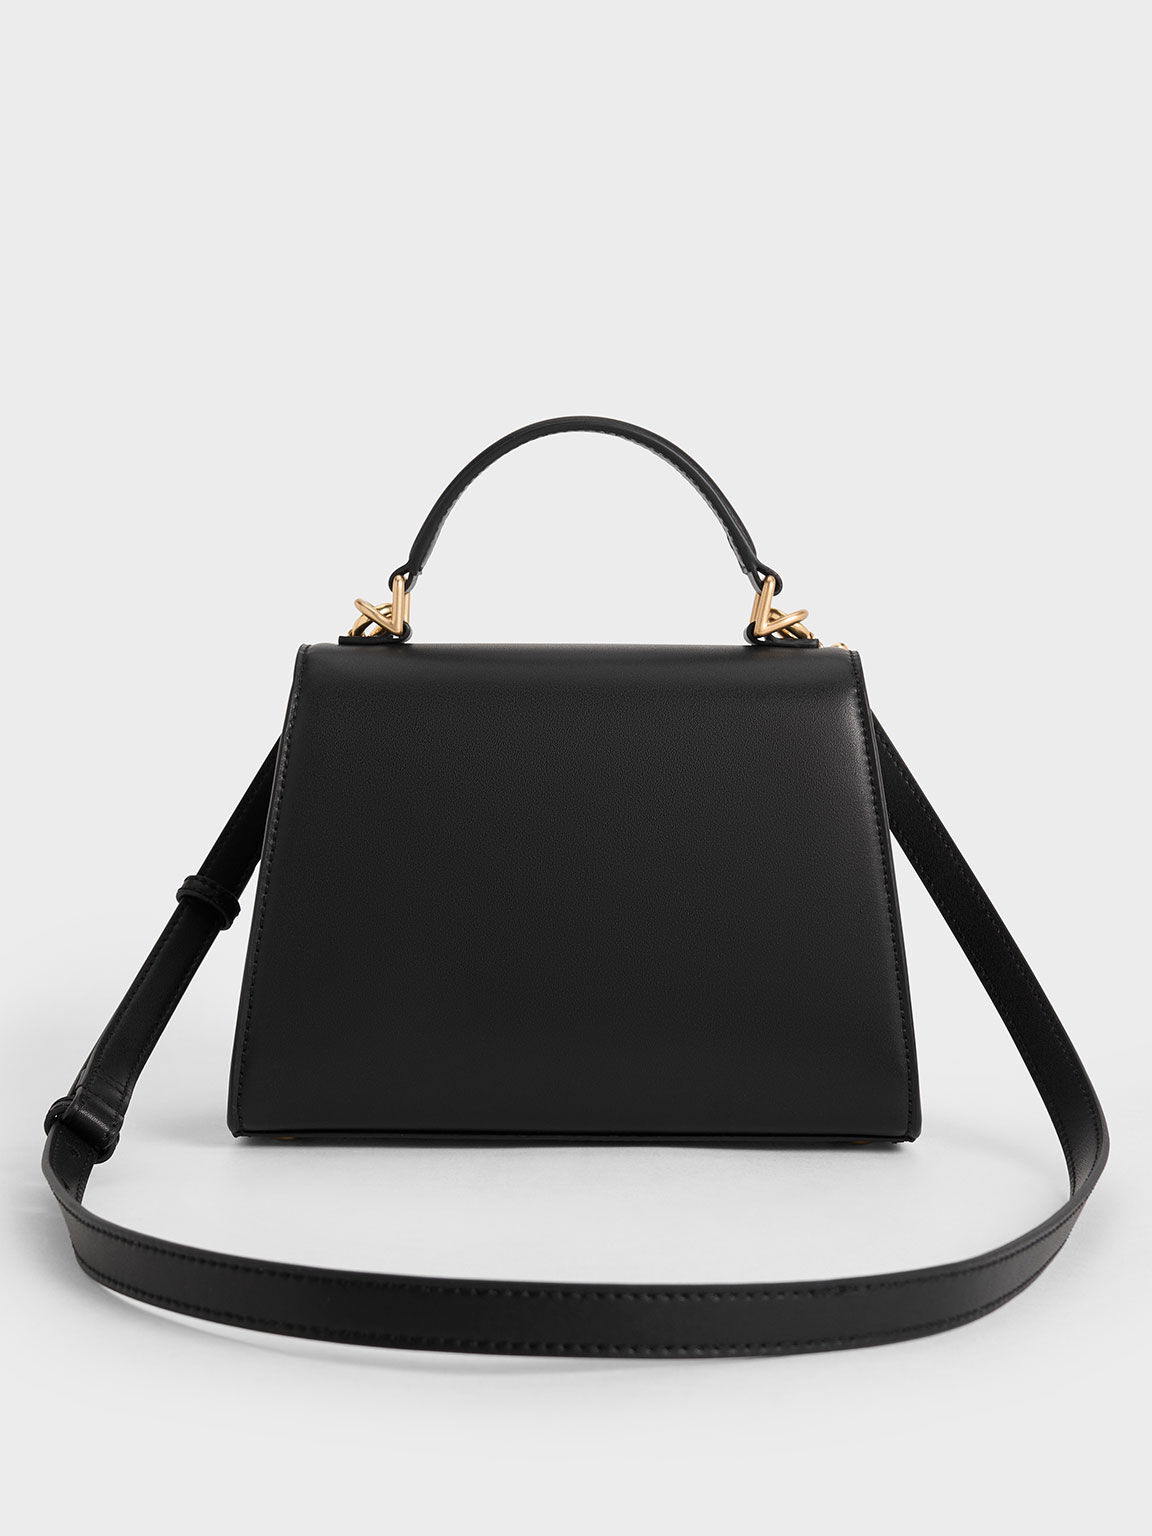 กระเป๋าถือหูจับด้านบนทรงสี่เหลี่ยมคางหมูรุ่น Violetta, สีดำ, hi-res